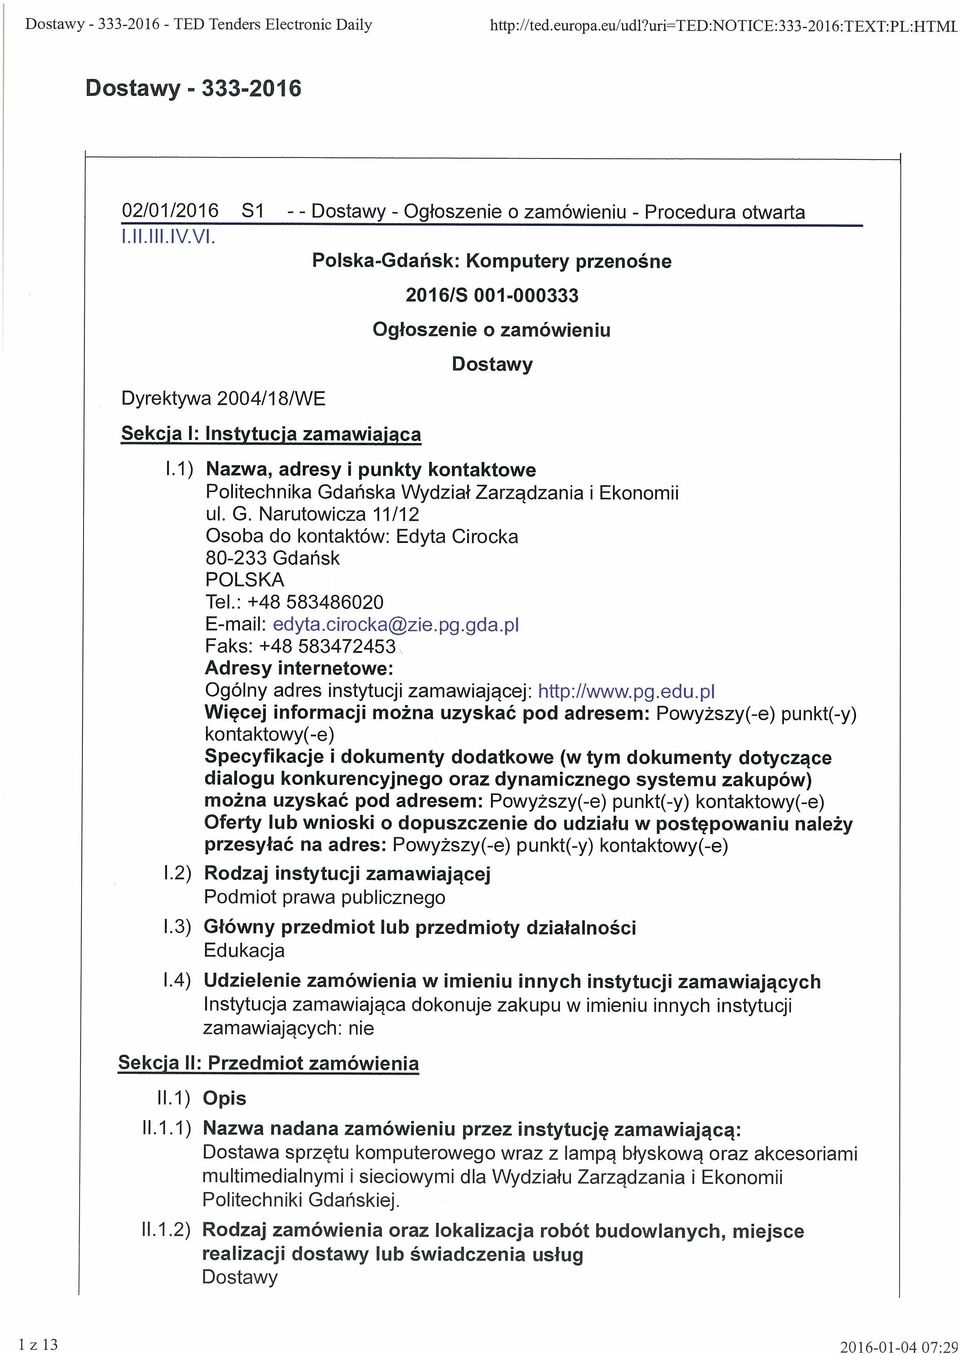 Polska-Gdańsk: Komputery przenośne Dyrektywa 2004/18/WE Sekcja 1: Instytucja zamawiająca 20161S 001-000333 Ogłoszenie o zamówieniu Dostawy 1.